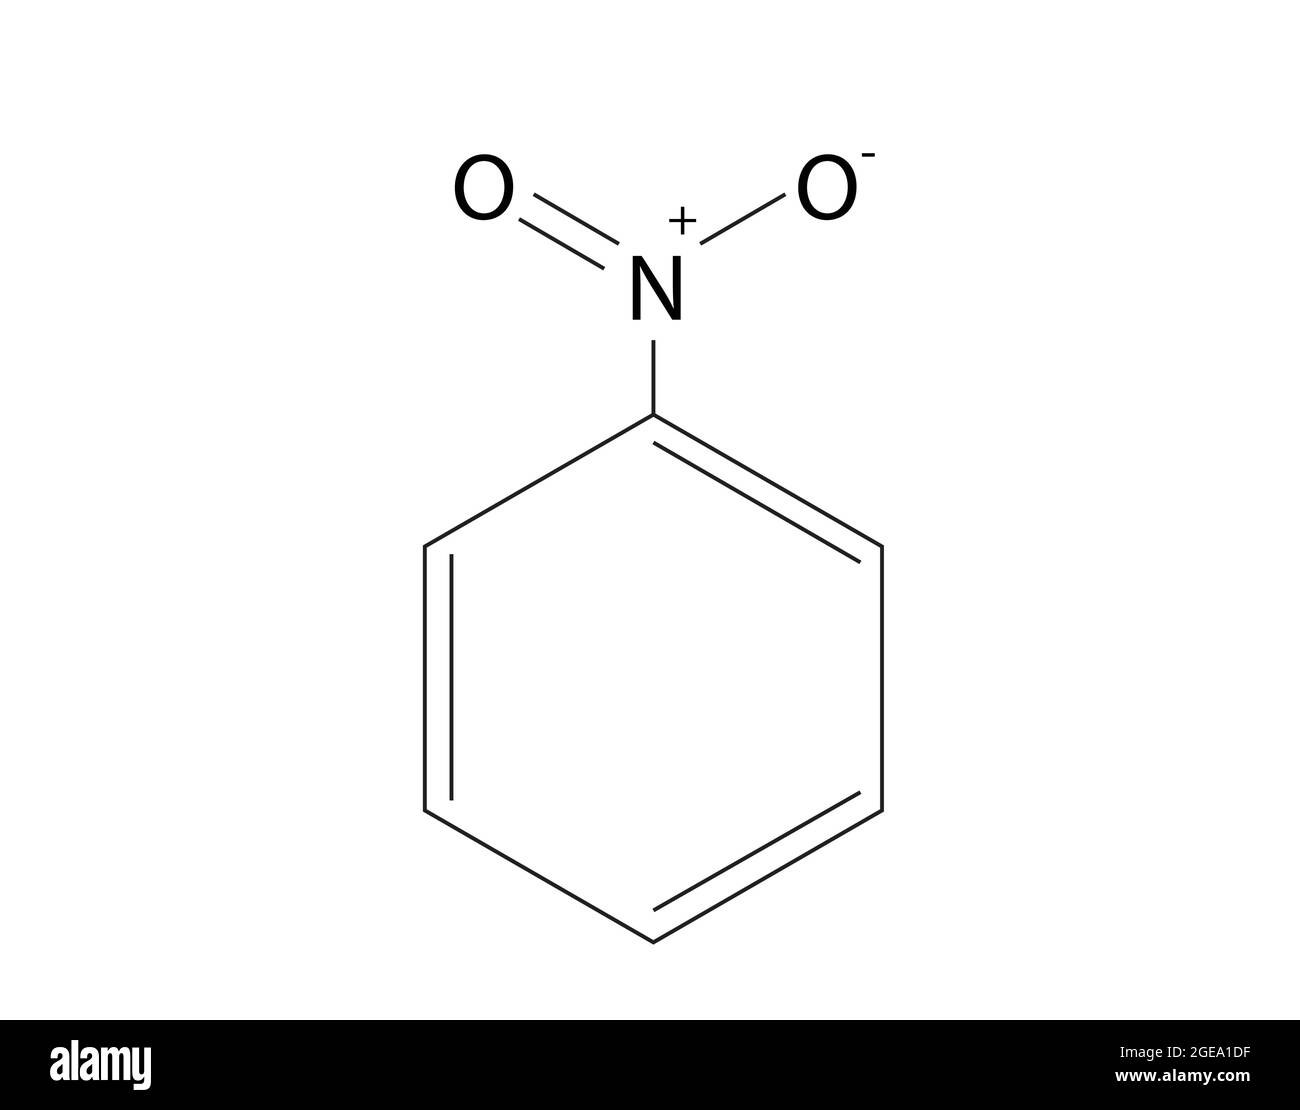 Struttura chimica del nitrobenzene, anatomia del nitrobenzene, struttura molecolare del nitrobenzene, formula chimica del nitrobenzene, C6H5NO2 Illustrazione Vettoriale